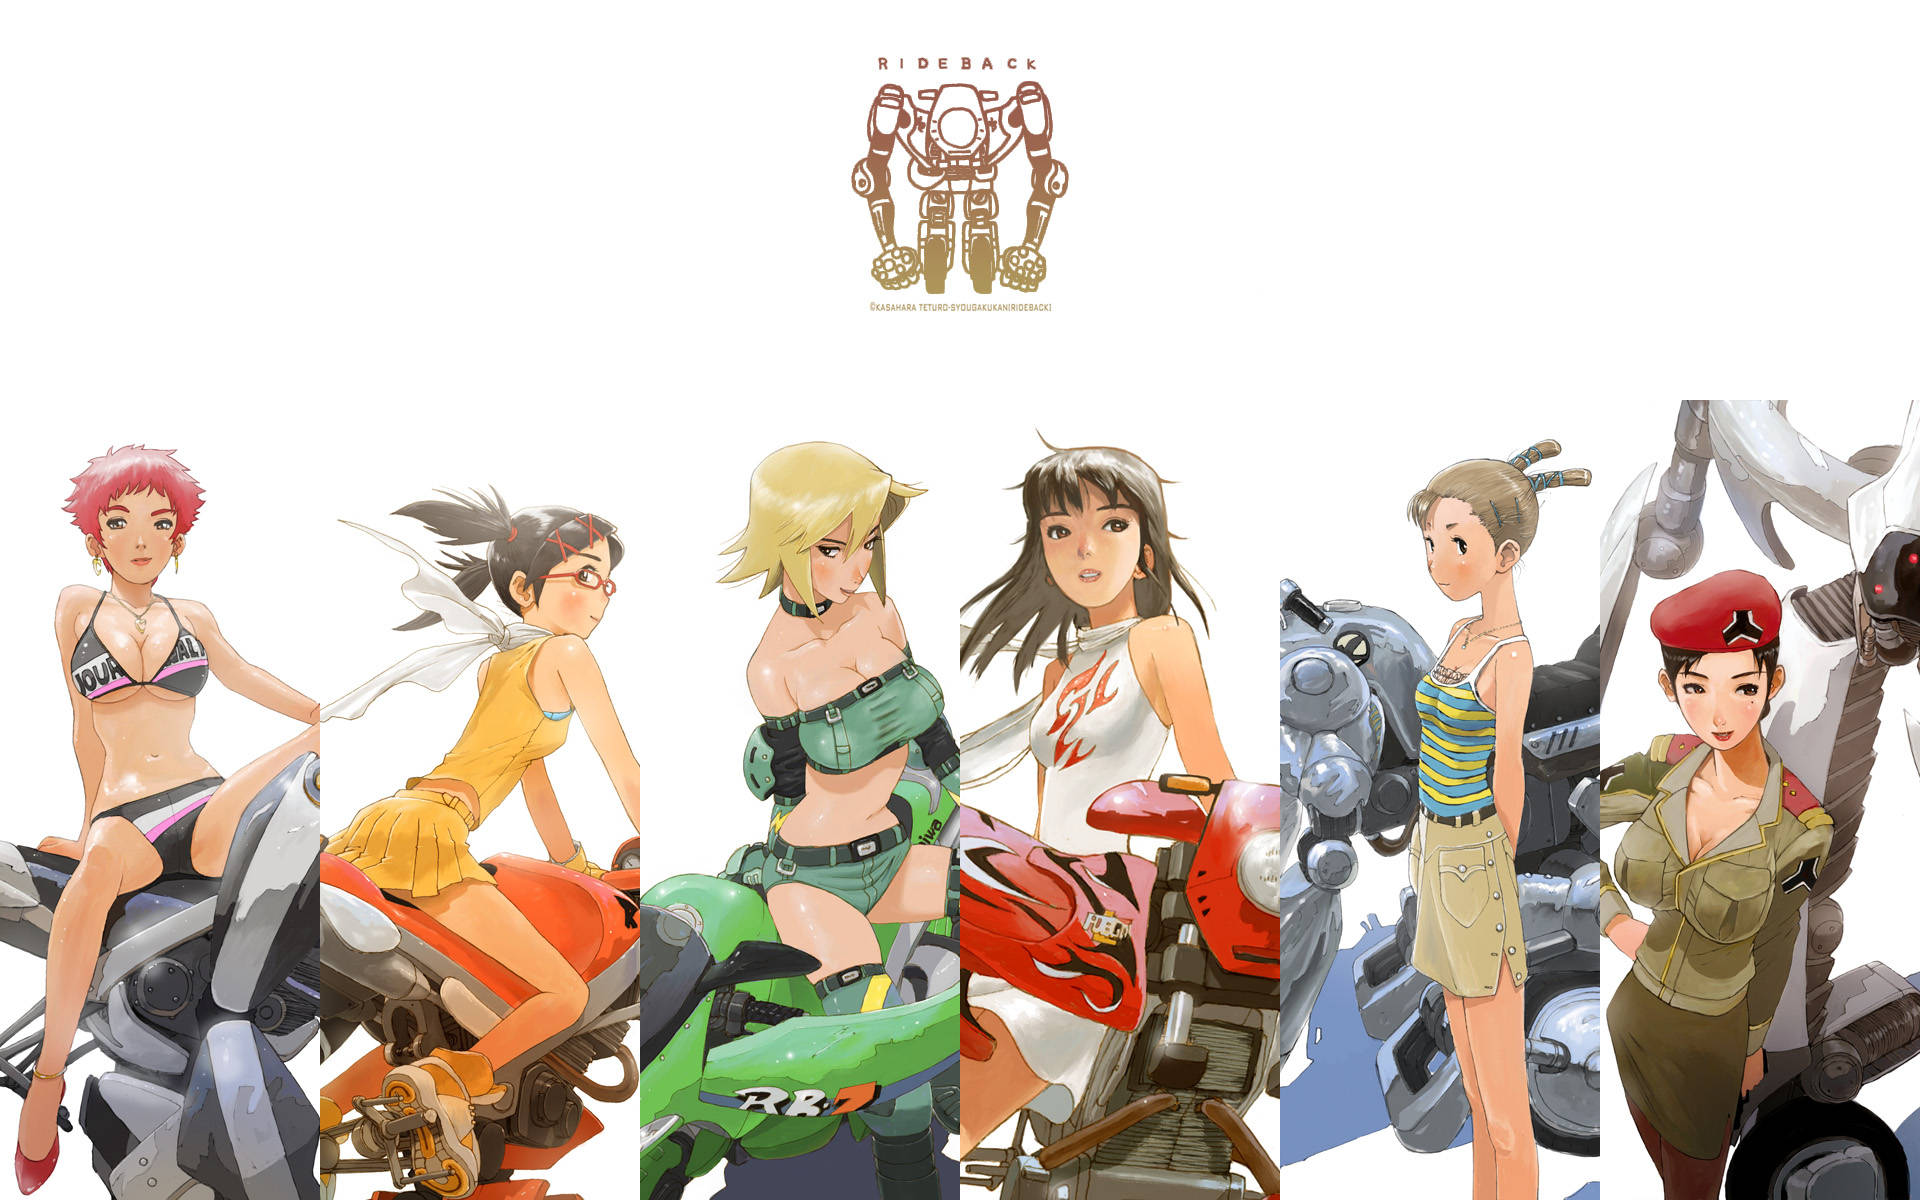 Rideback Anime Poster wallpaper